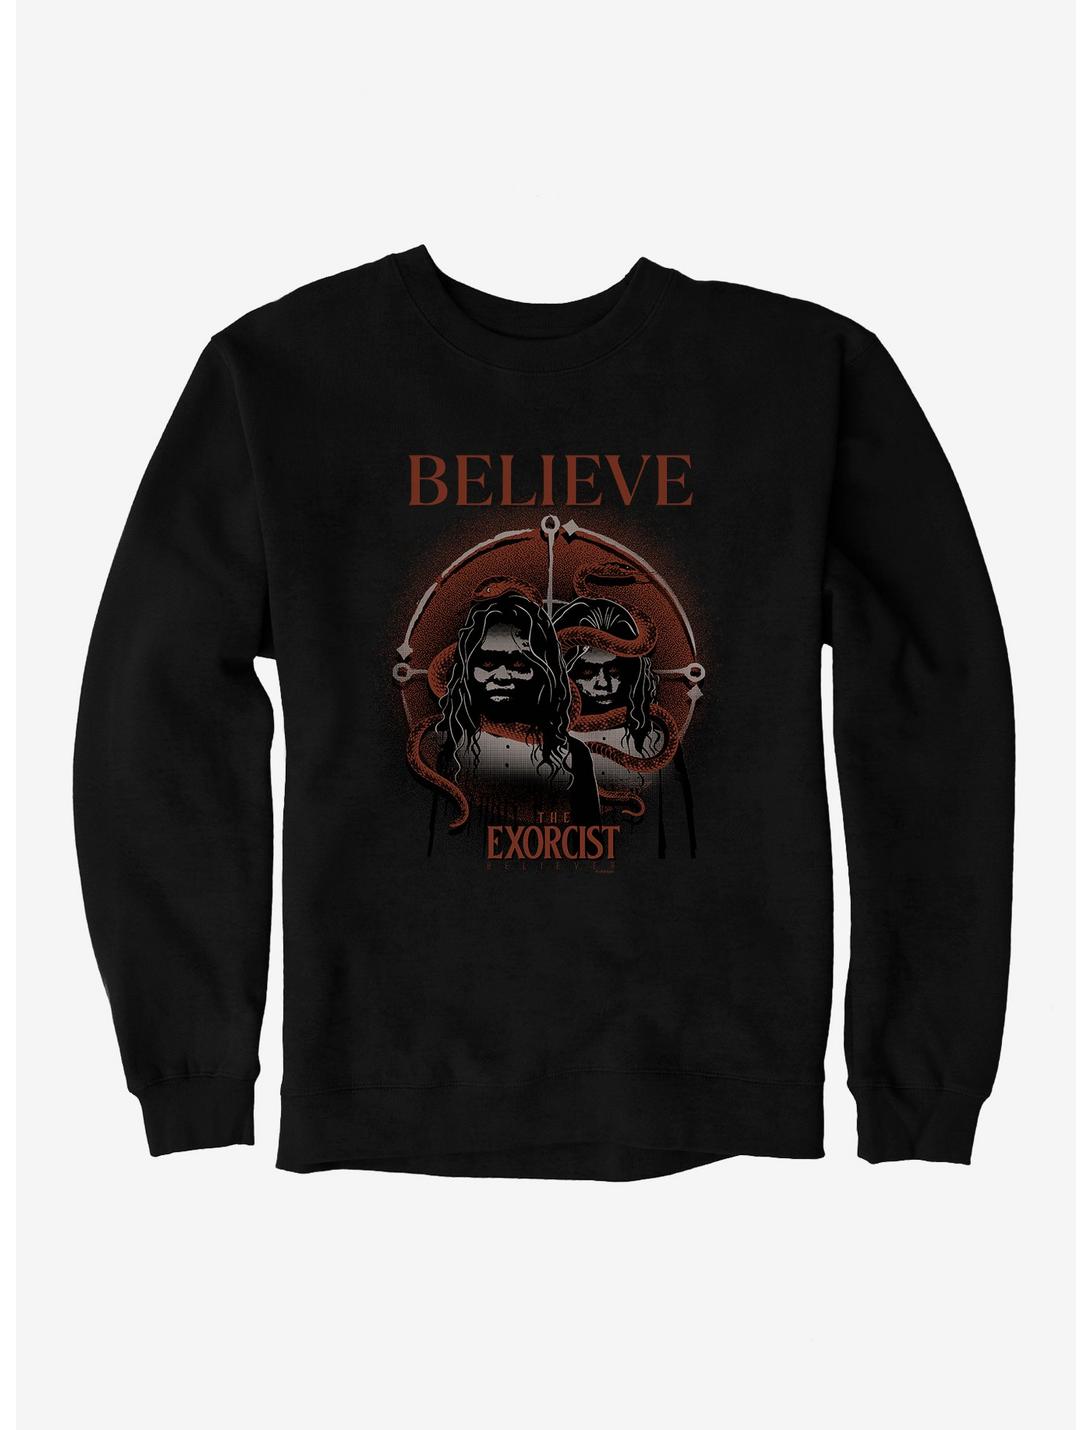 The Exorcist Believer Believe Sweatshirt, BLACK, hi-res